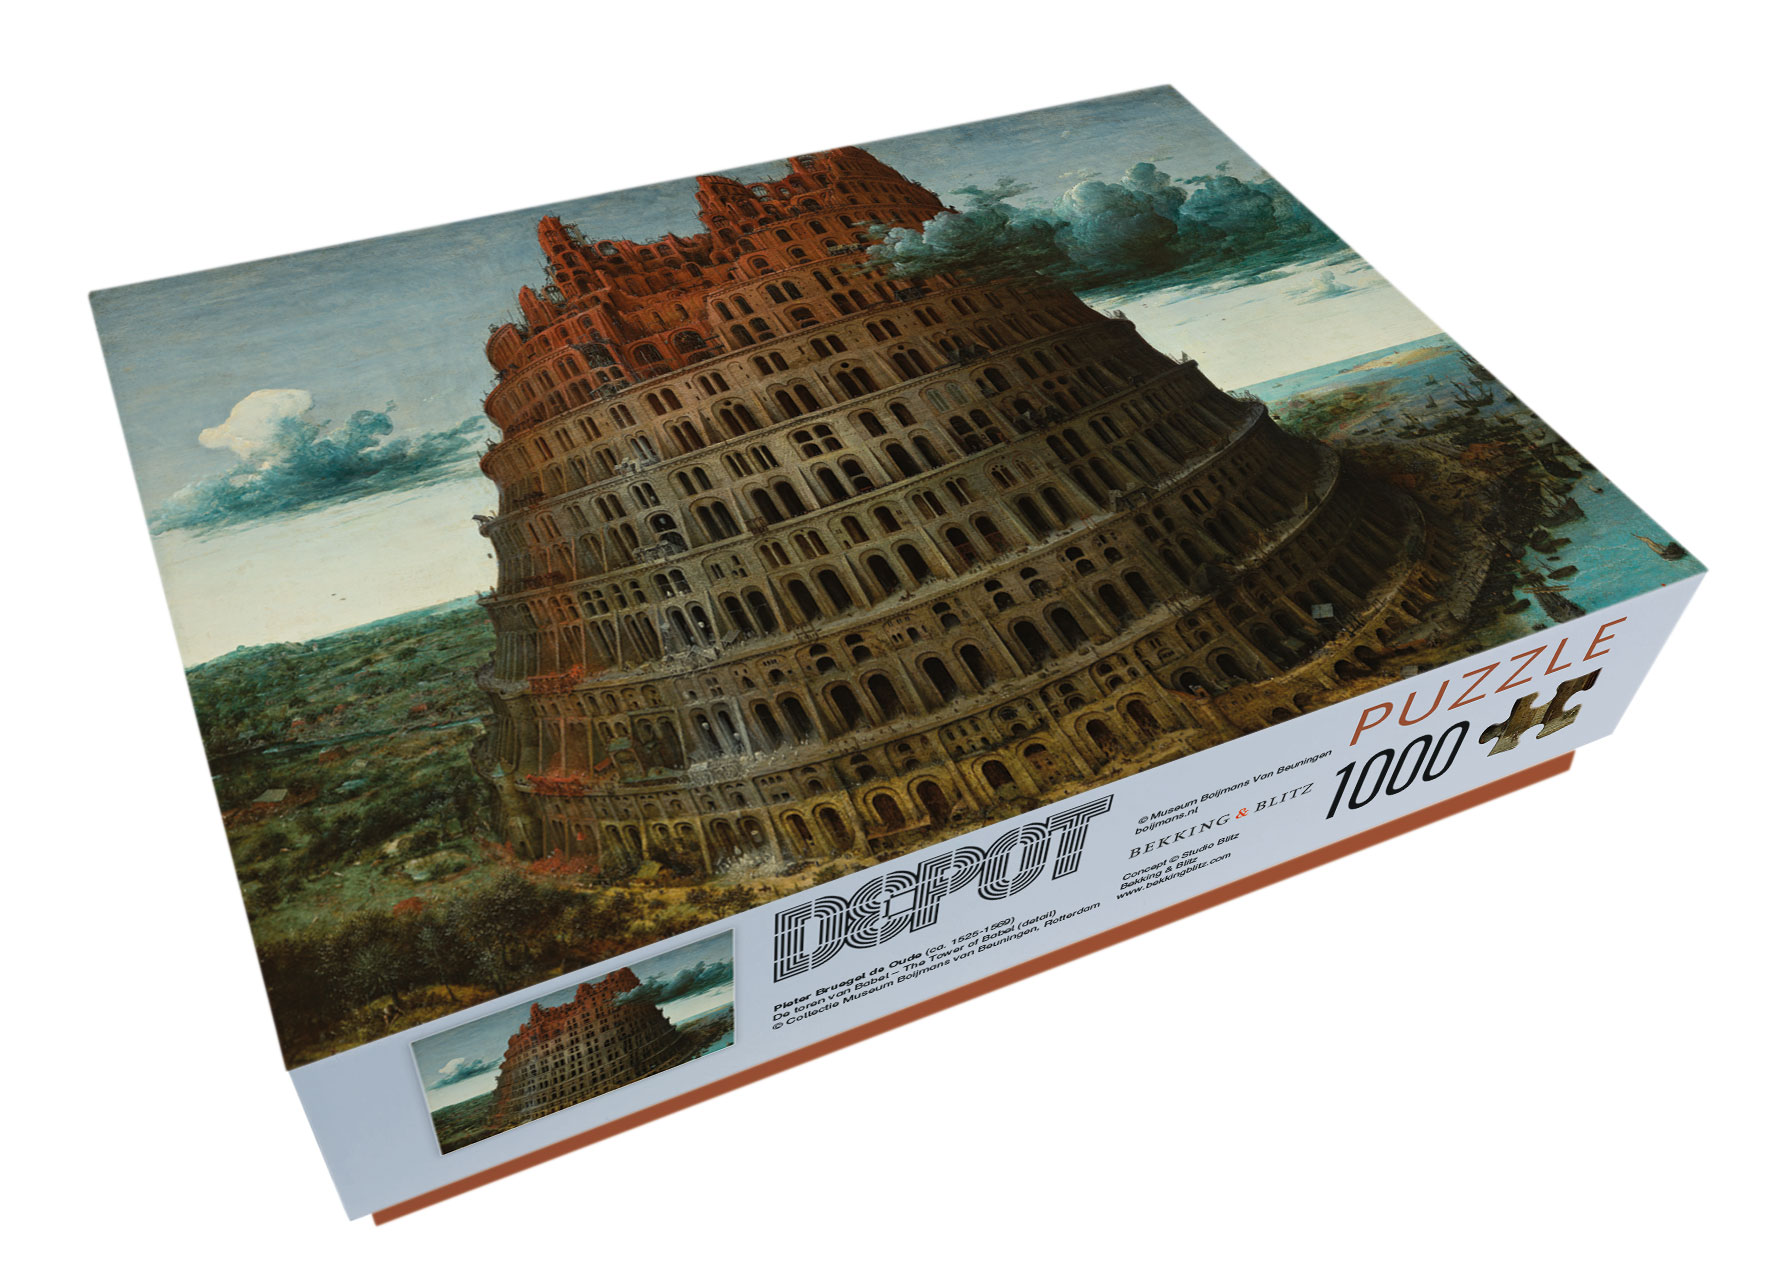 Bruegel's 'Tower of Babel' - Museum Boijmans Van Beuningen